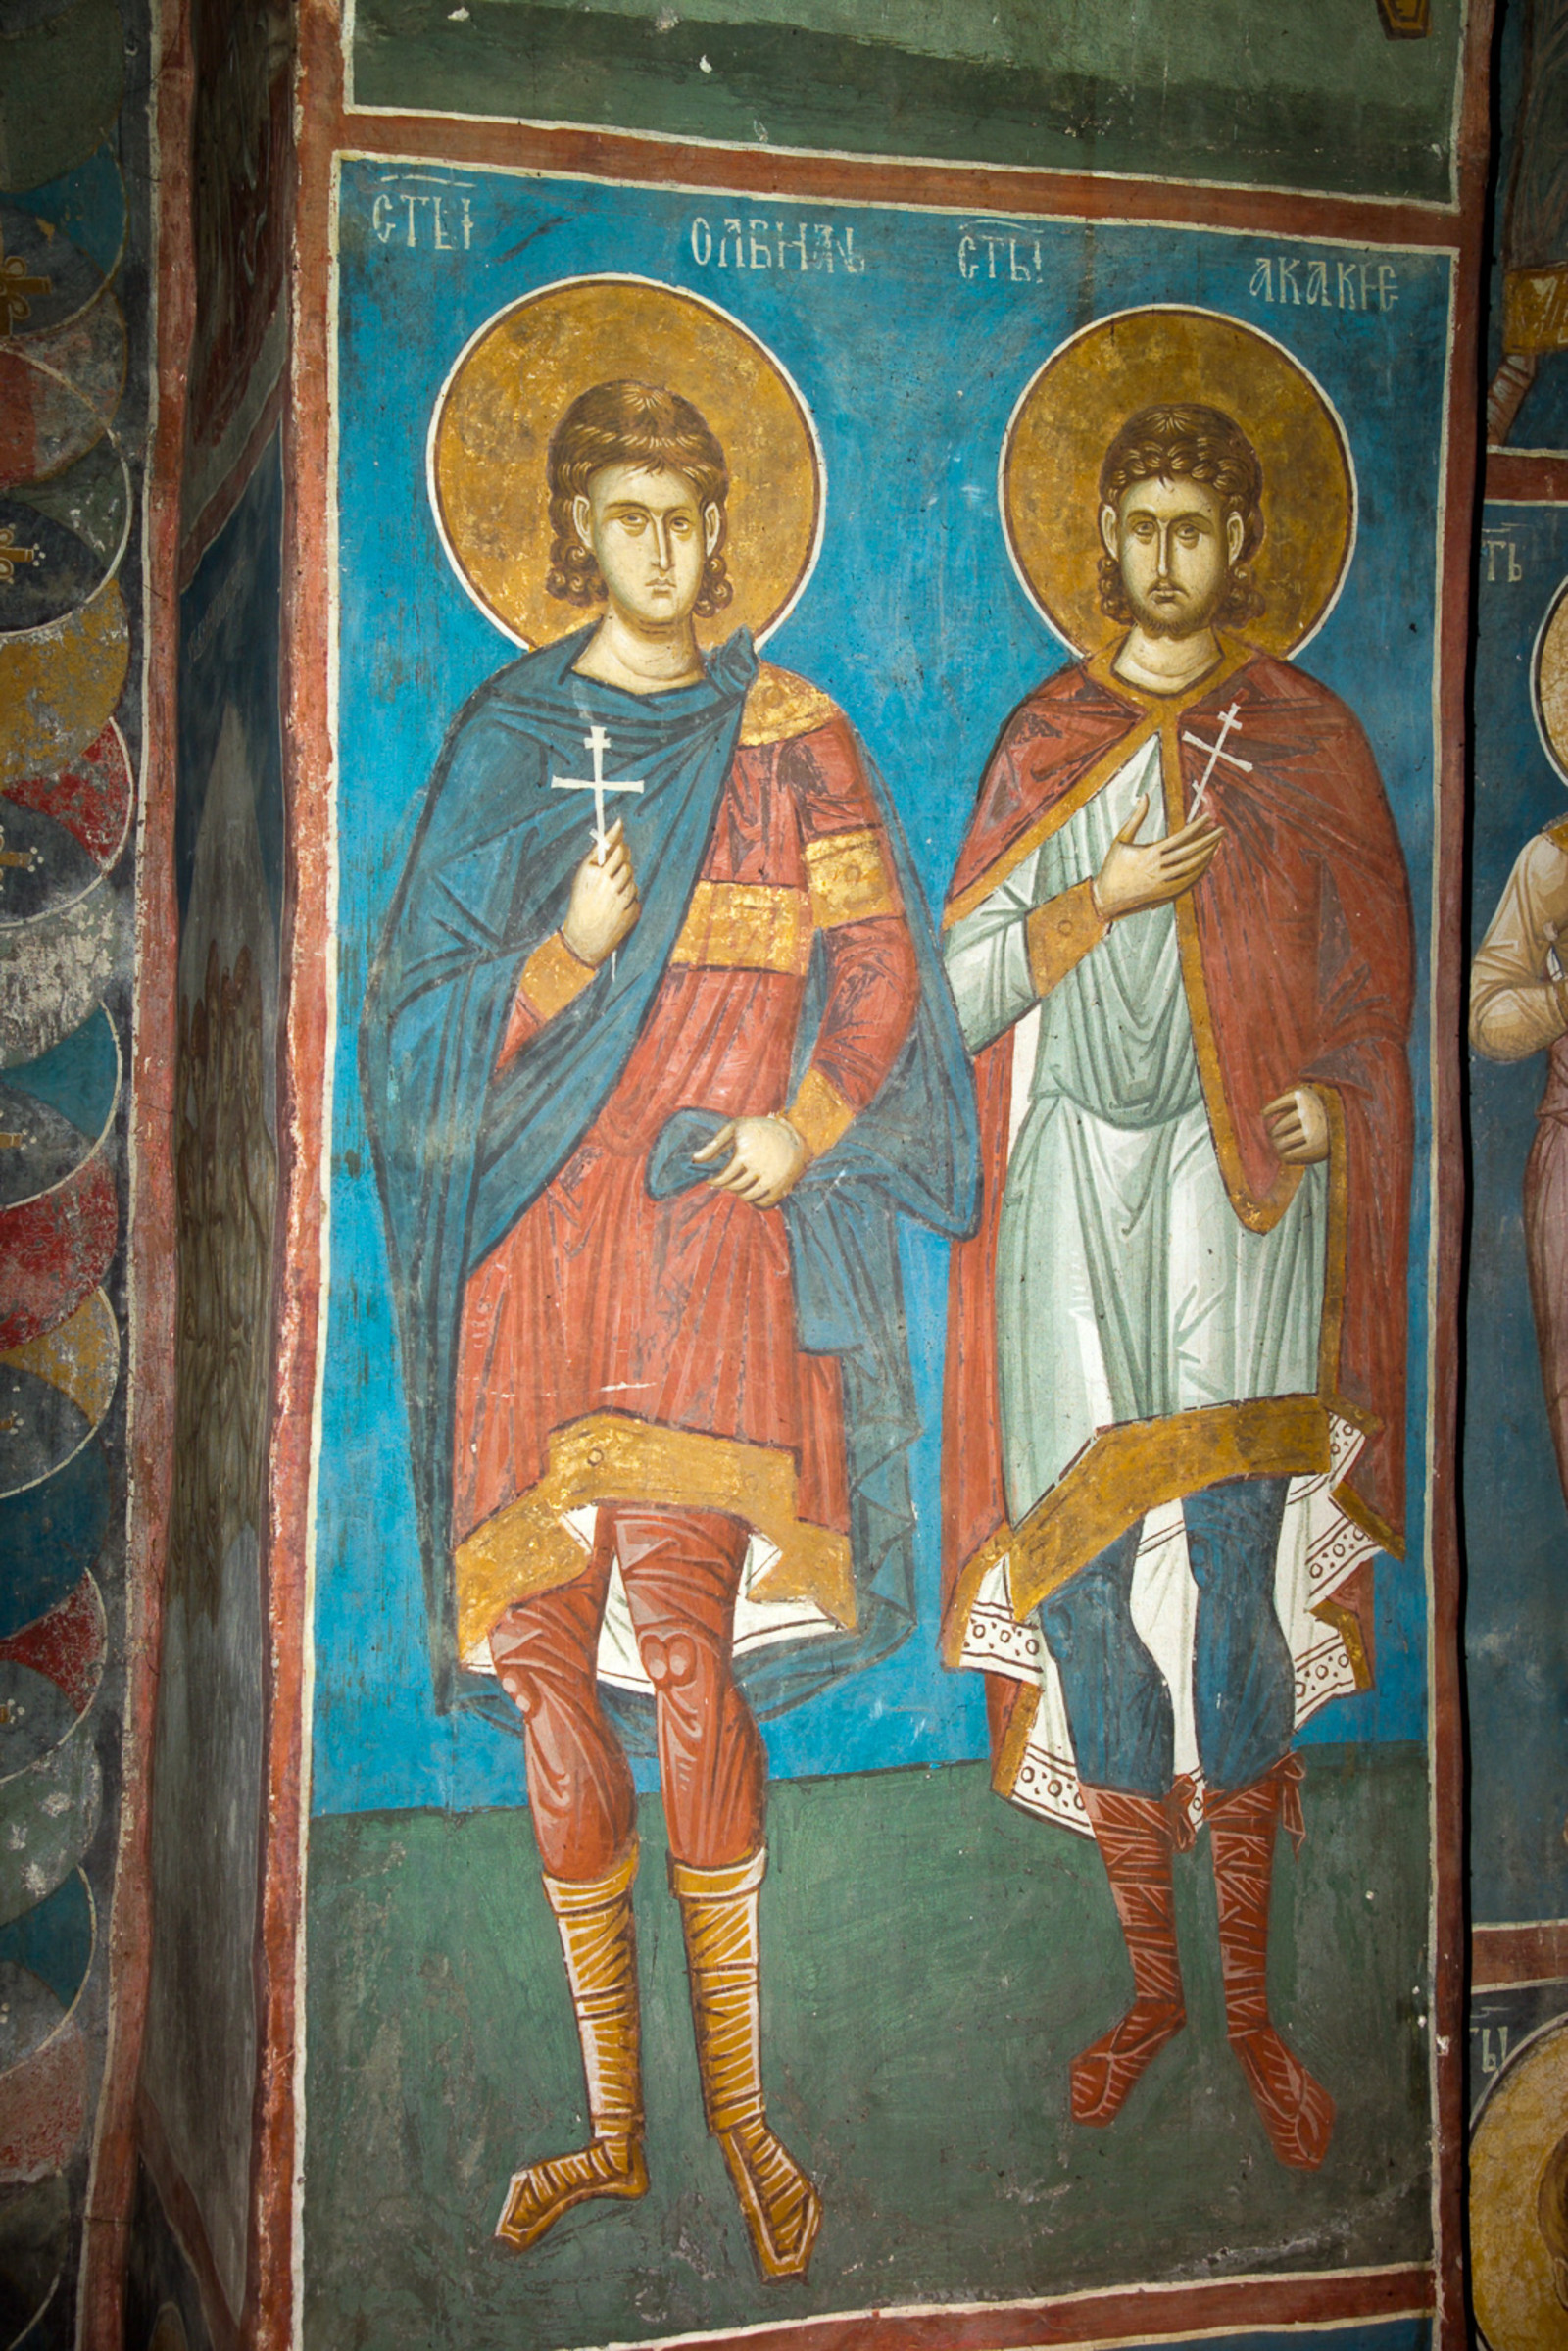 269,268 St. Olbianus and St. Acacius